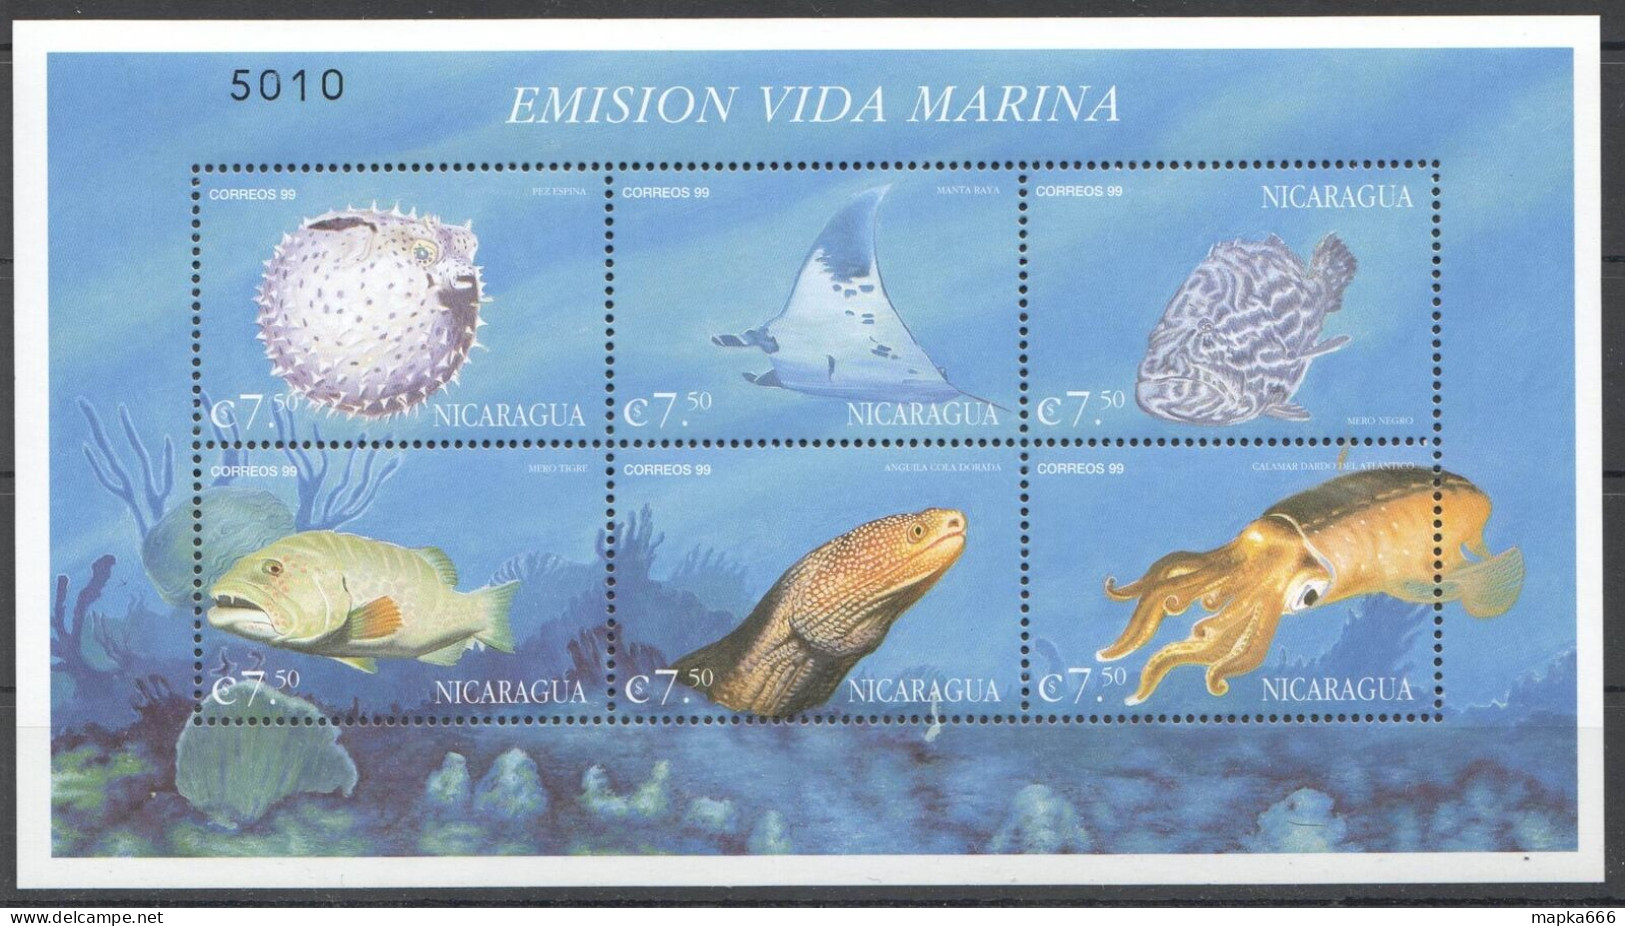 B1226 1999 Nicaragua Marine Life Fish Emision Vida Marina 1Kb Mnh - Meereswelt